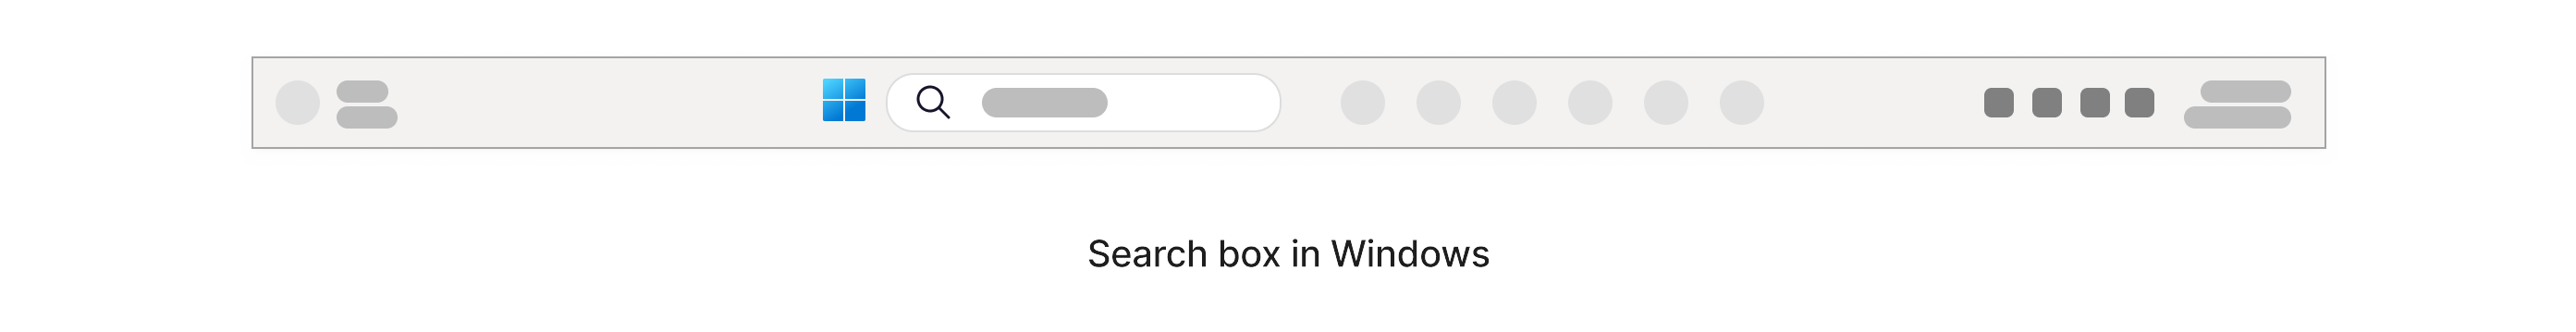 Vyhľadávacie pole s ikonou lupy, ktorá sa nachádza na paneli úloh Windowsu v dolnej časti obrazovky.